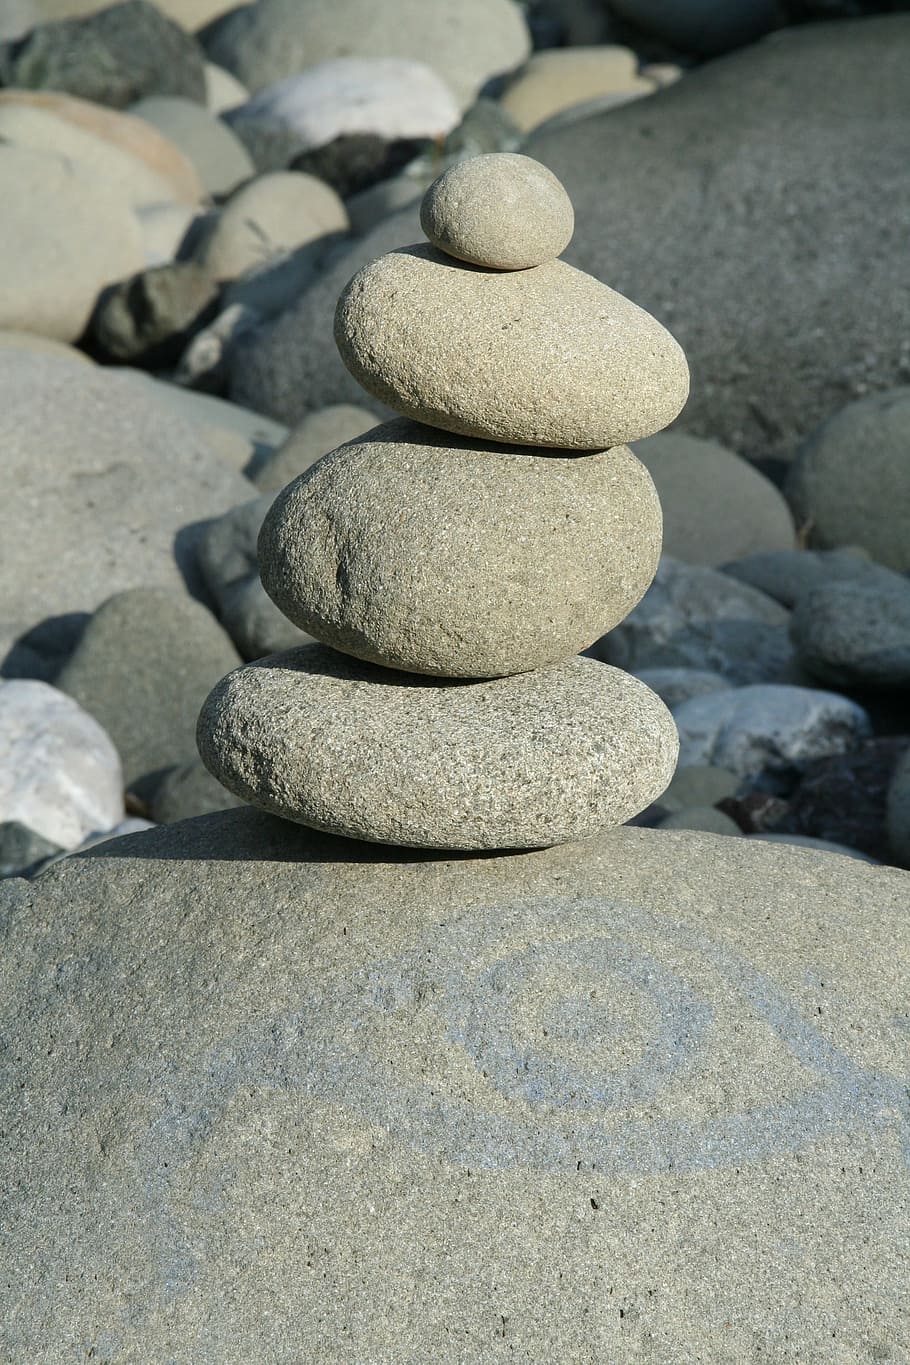 Pedras, rio, torre de pedra, torre, seixo, equilíbrio, pedra - objeto, rocha - objeto, zen, estabilidade